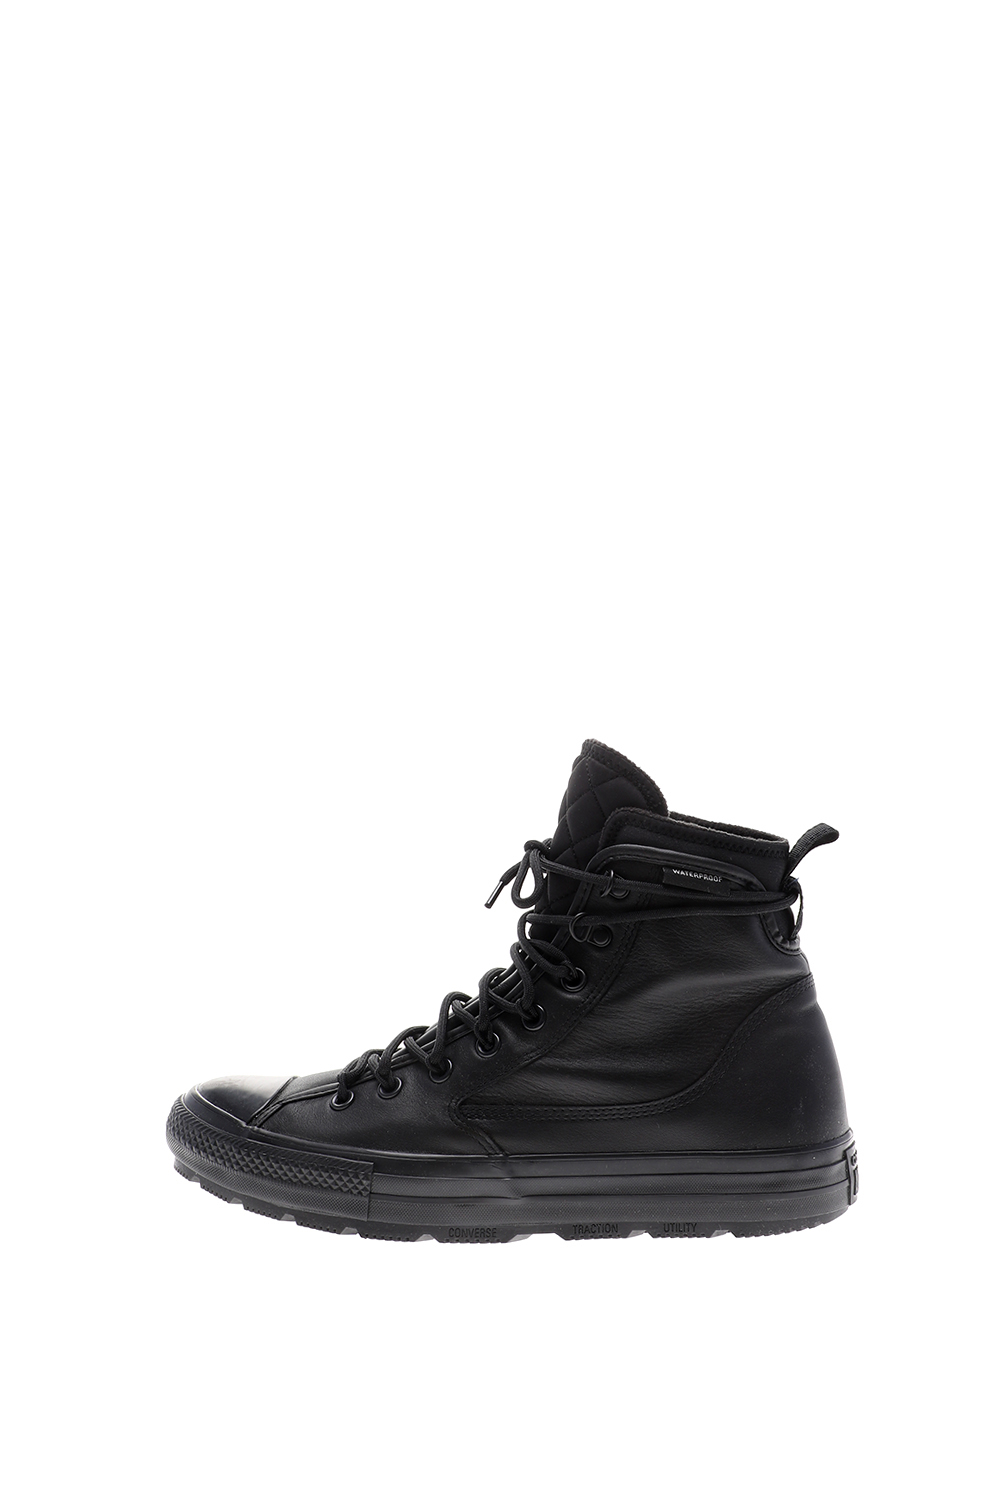 Γυναικεία/Παπούτσια/Sneakers CONVERSE - Unisex sneakers CONVERSE CTAS All Terrain μαύρα